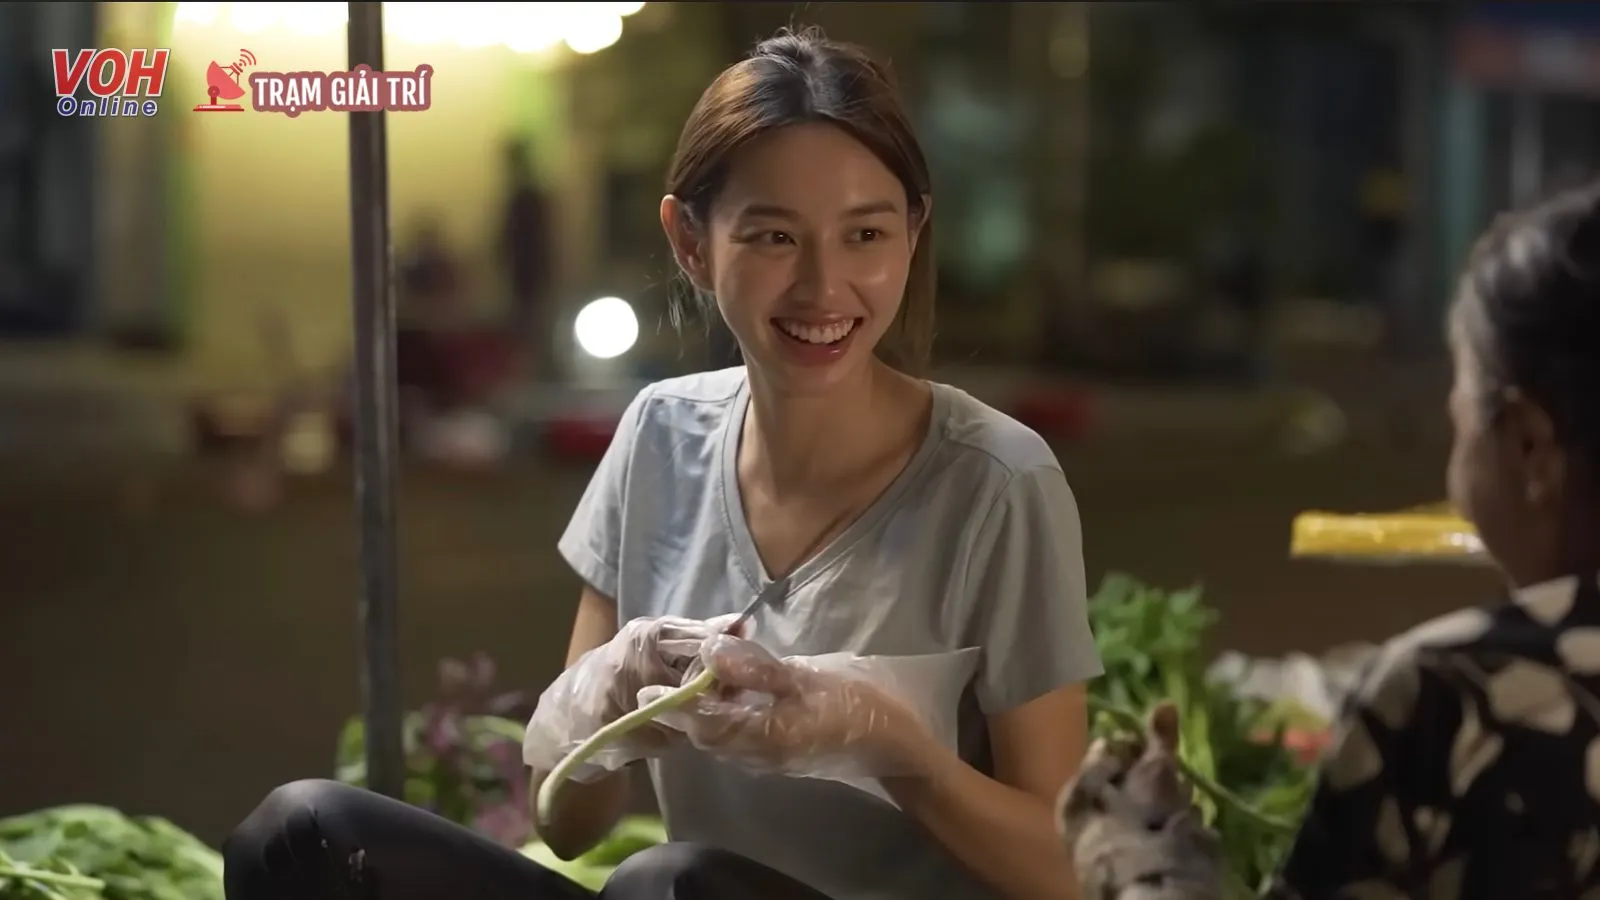 Hoa hậu Thùy Tiên ra chợ bán rau, xúc động khi nghe tâm sự của tiểu thương